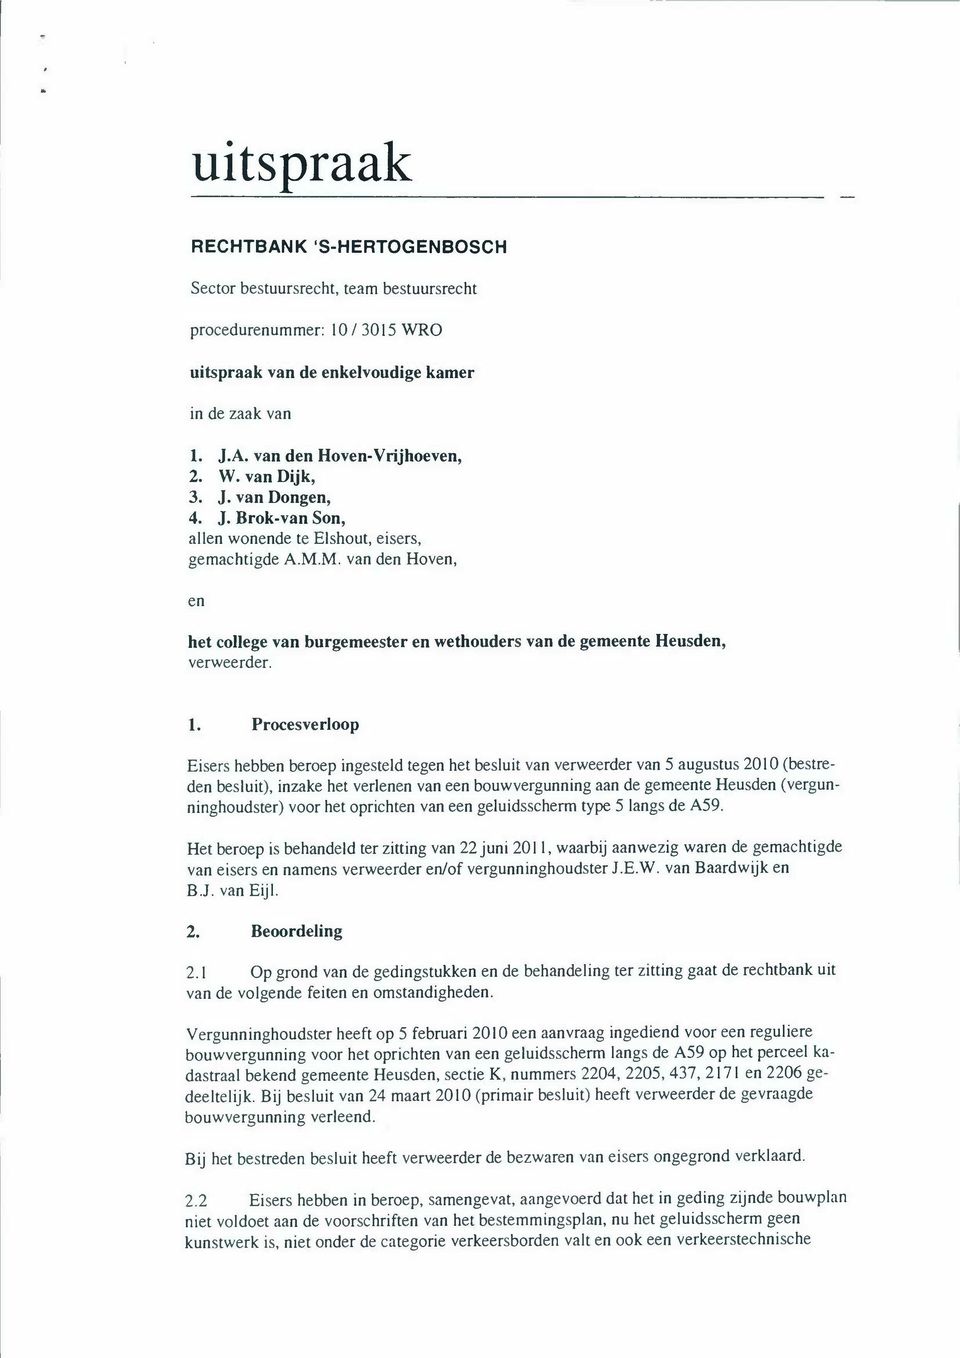 Procesverloop Eisers hebben beroep ingeste1d tegen het besluit van verweerder van 5 augustus 2010 (bestreden besluit), inzake het verlenen van een bouwvergunning aan de gemeente Heusden